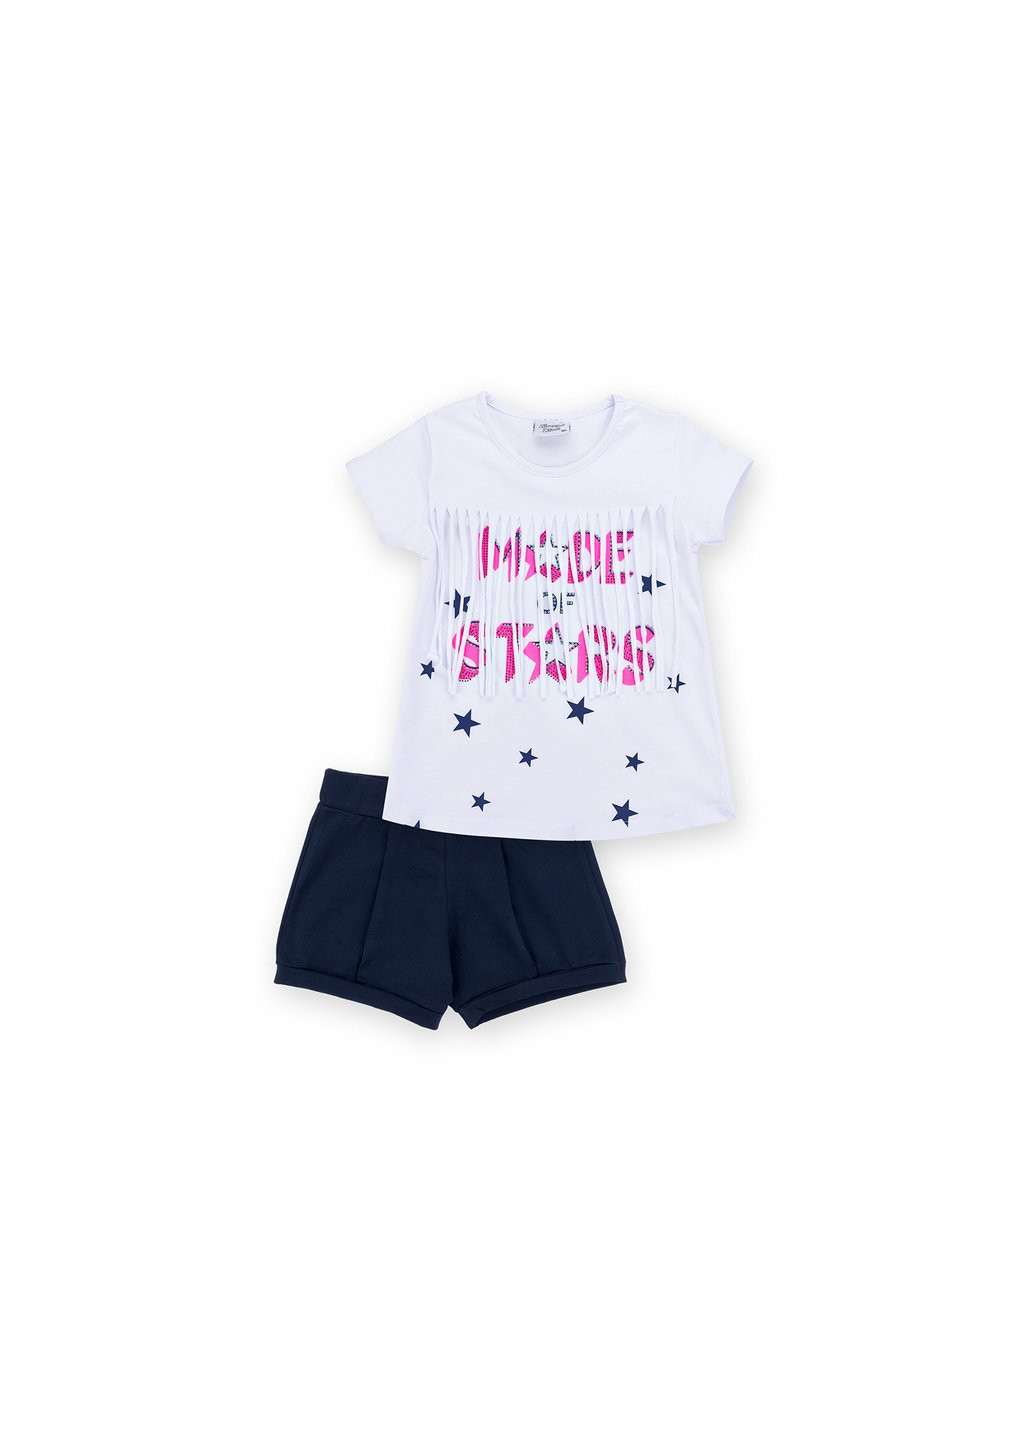 Комбинированный летний набор детской одежды футболка со звездочками с шортами (9036-116g-white) Breeze